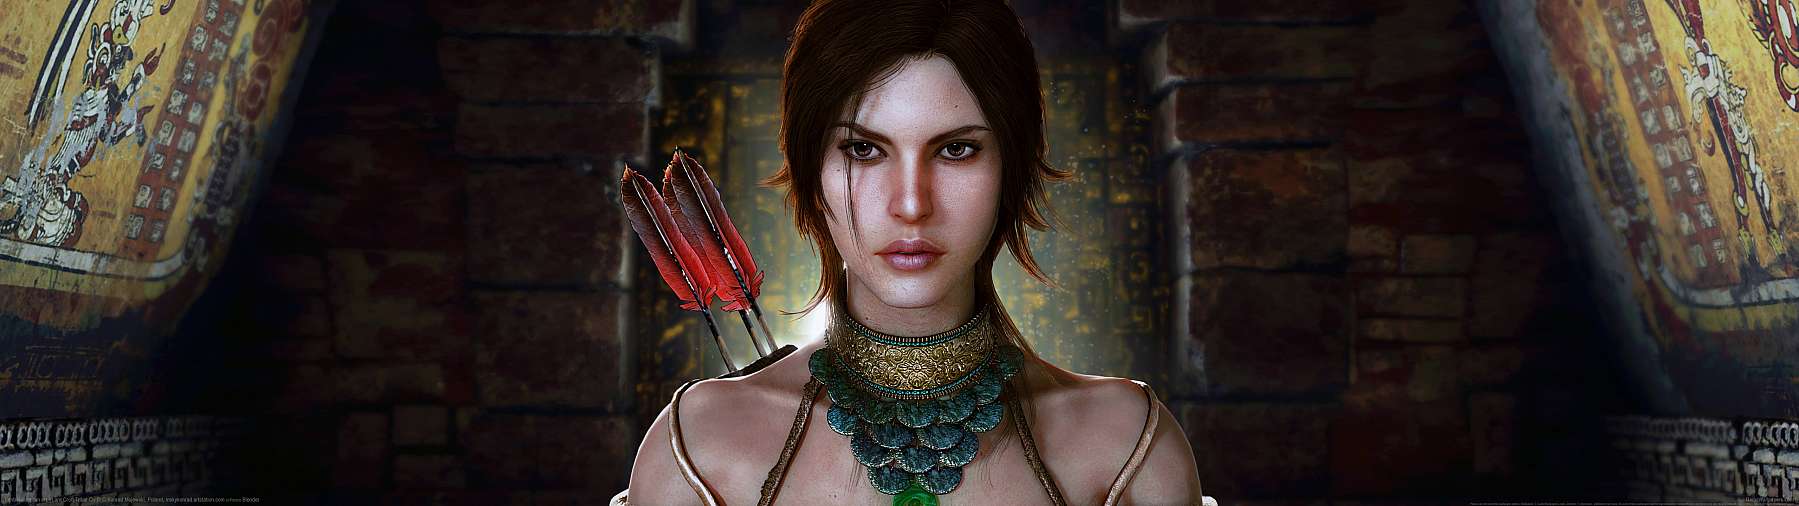 Tomb Raider fan art superwide fond d'cran 10